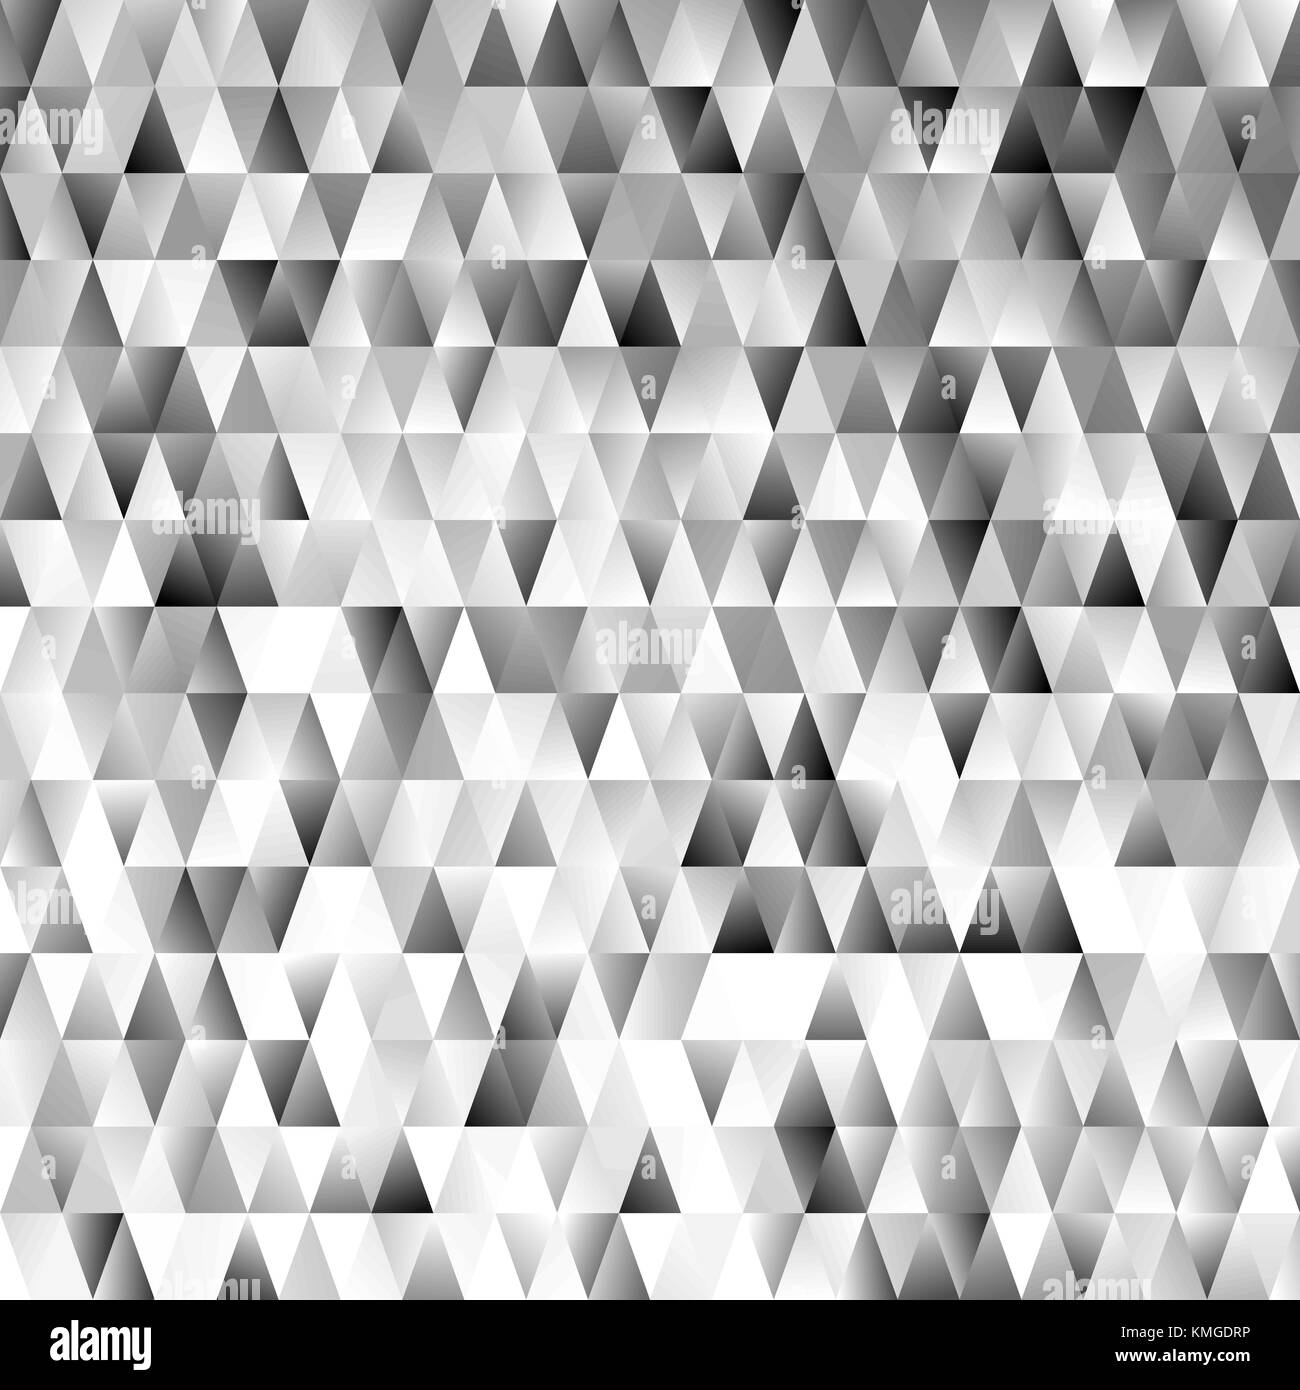 Polygone triangulaire géométrique motif de fond - graphique de vecteur gradient modernes avec des triangles gris Illustration de Vecteur